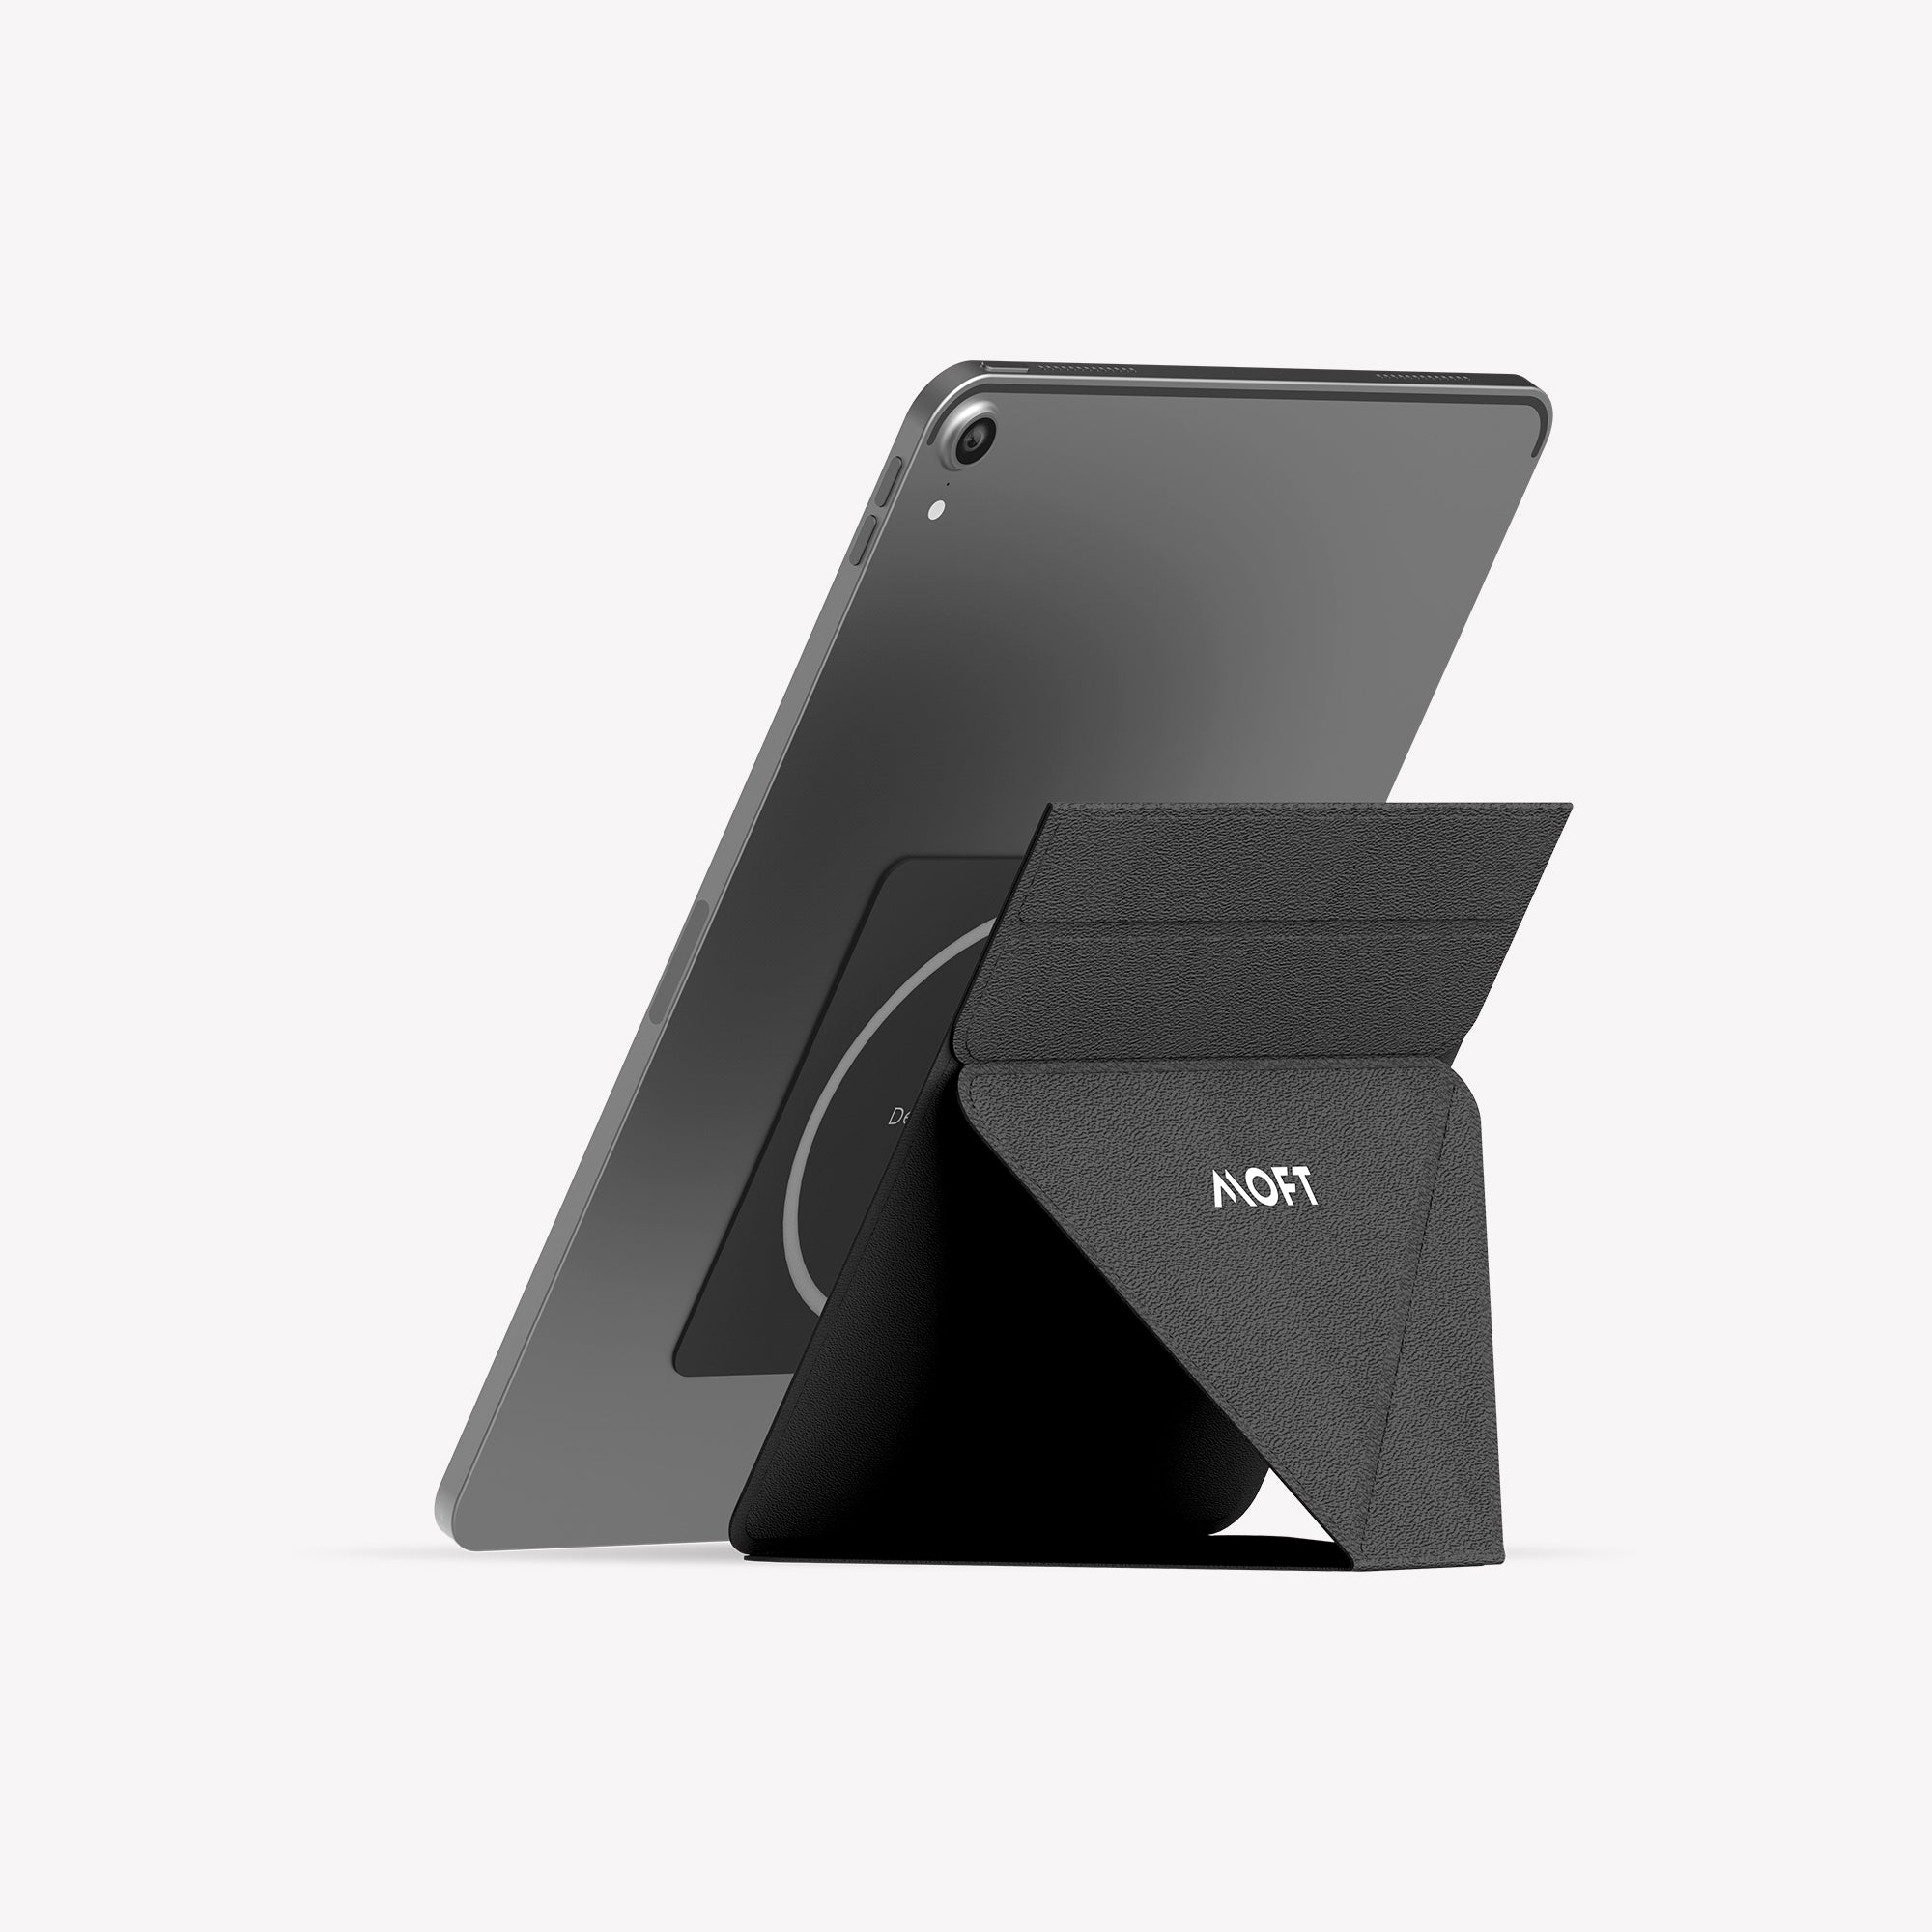 MOFT Snap Tablet Stand Holder, Foldable and Adjustable in Portrait/Landscape